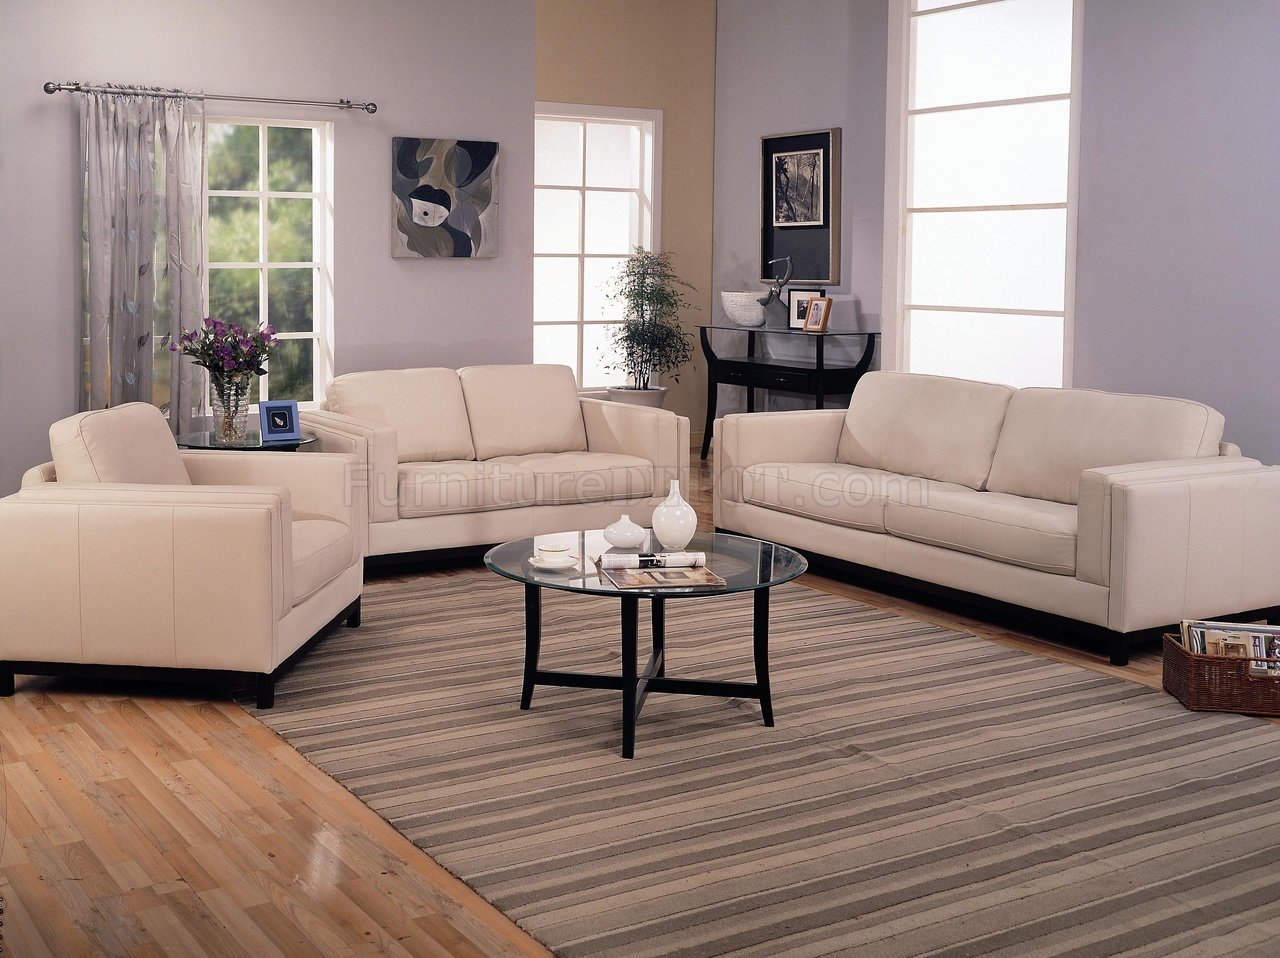 Living Room Colour Ideas With Cream Sofa